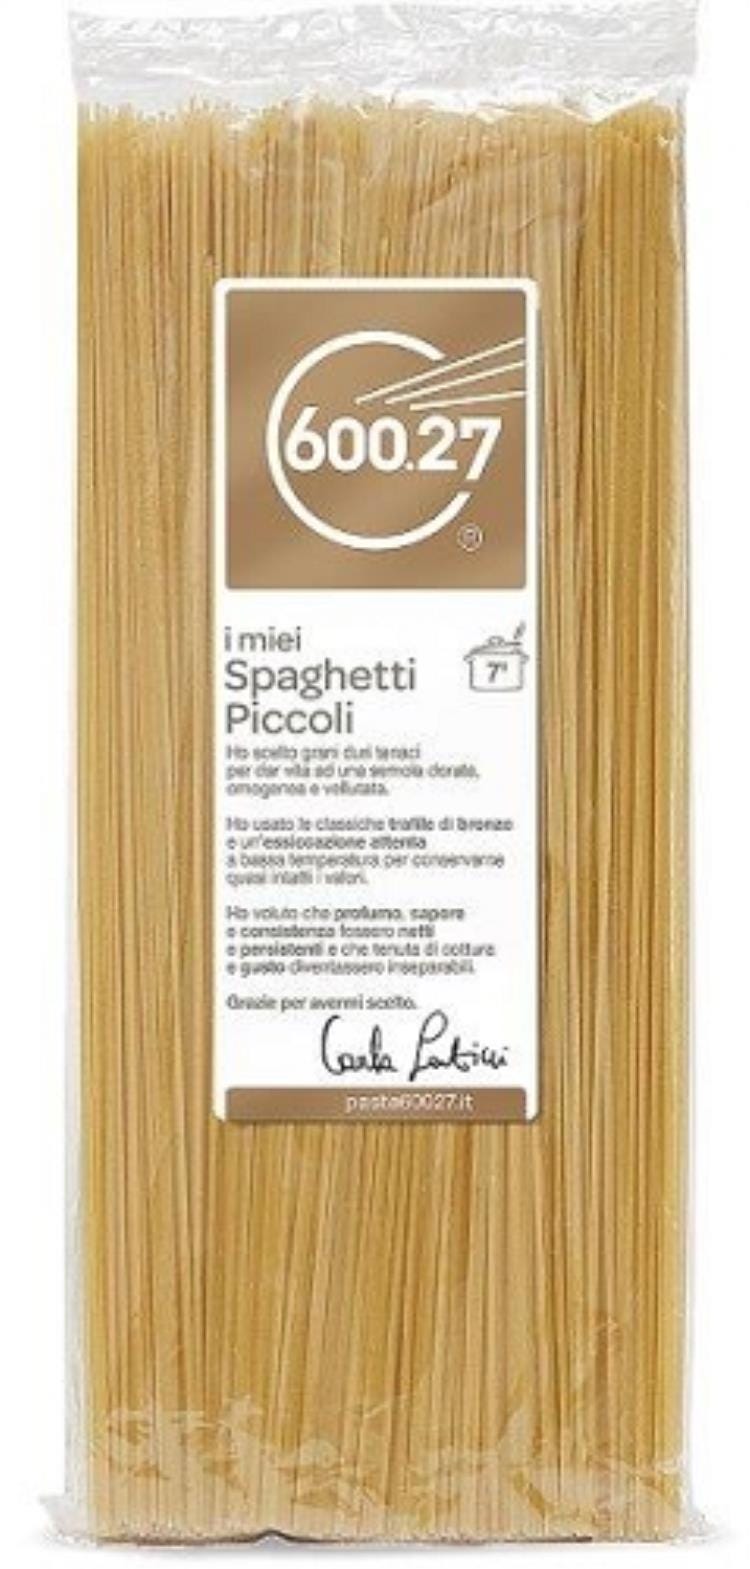 03 Spaghetti Piccoli